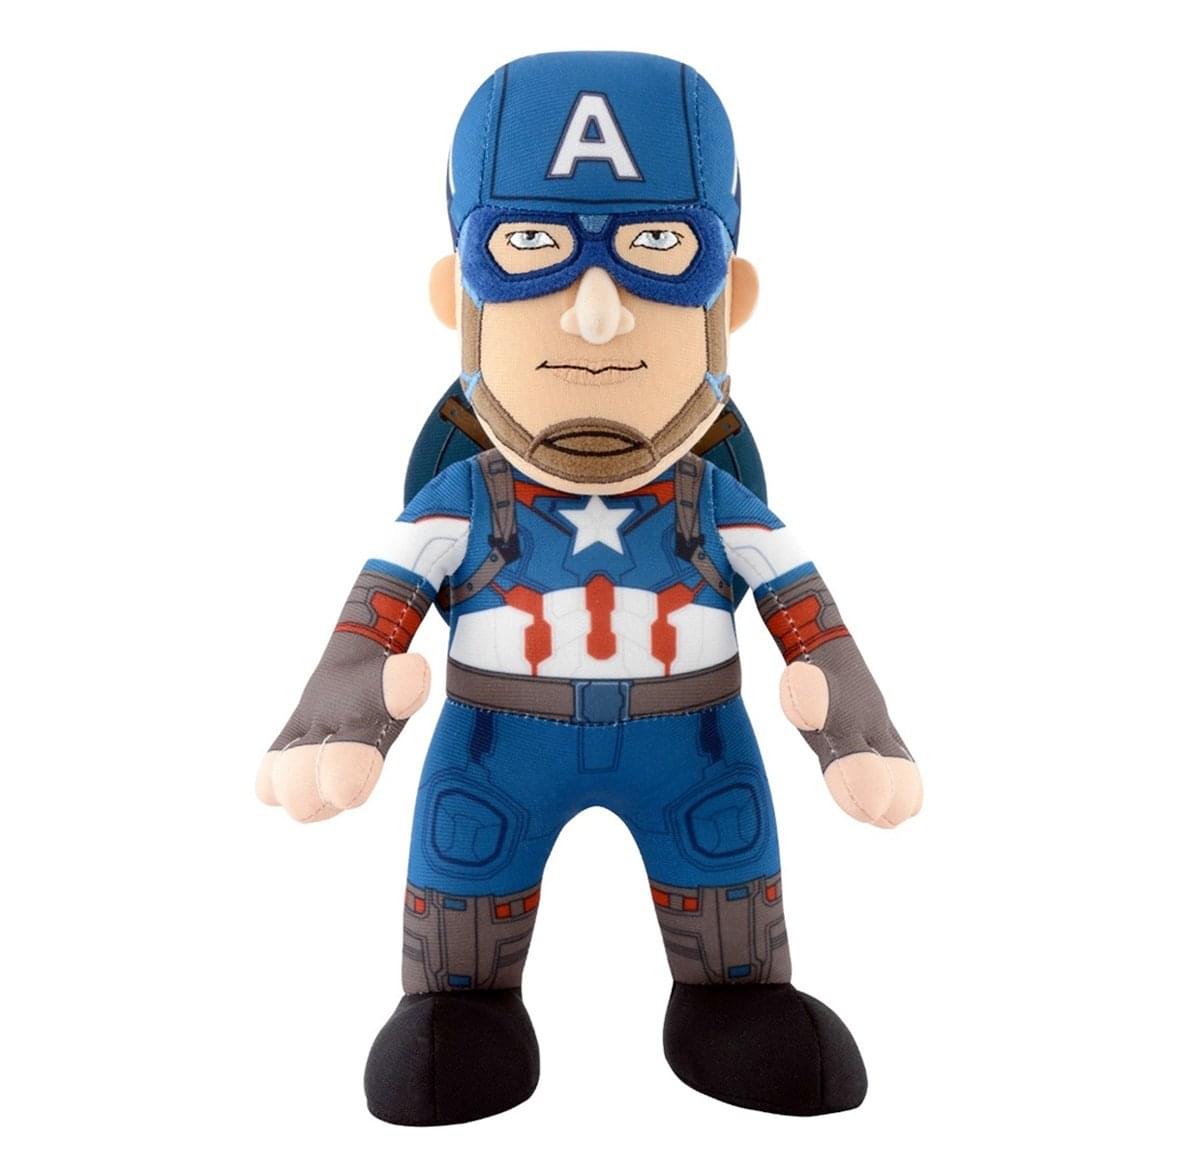 Marvel's Avengers 2 10" Plush Doll: Captain America